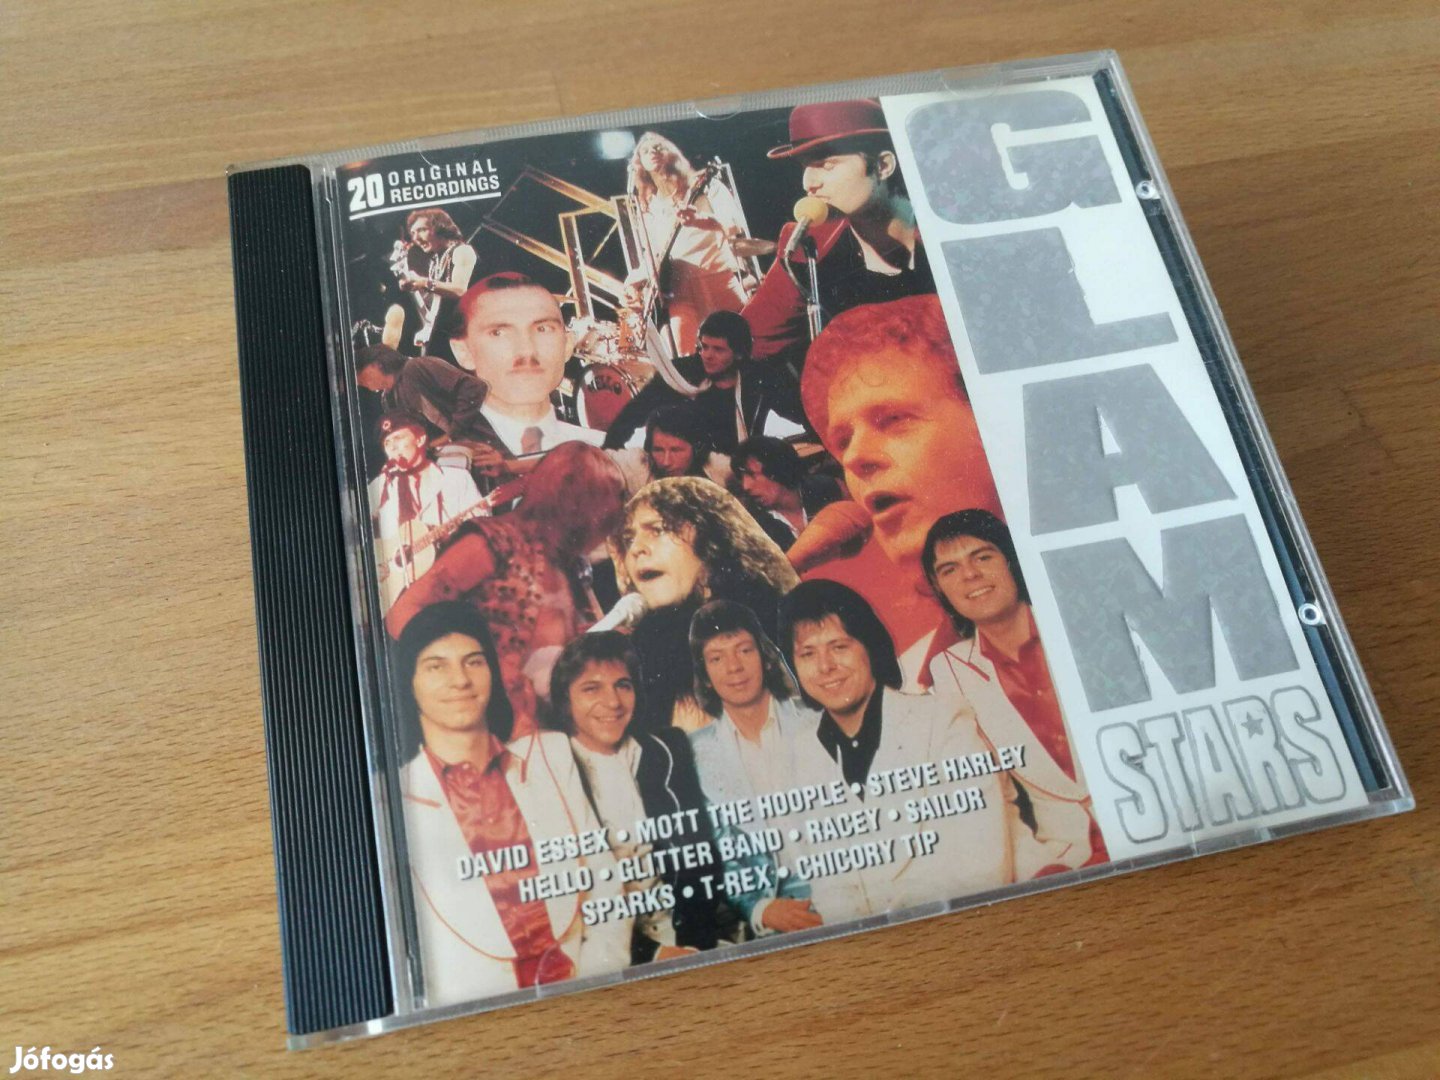 Glam stars - 20 original recordings (Wisepack Ltd., UK, 1993, CD)